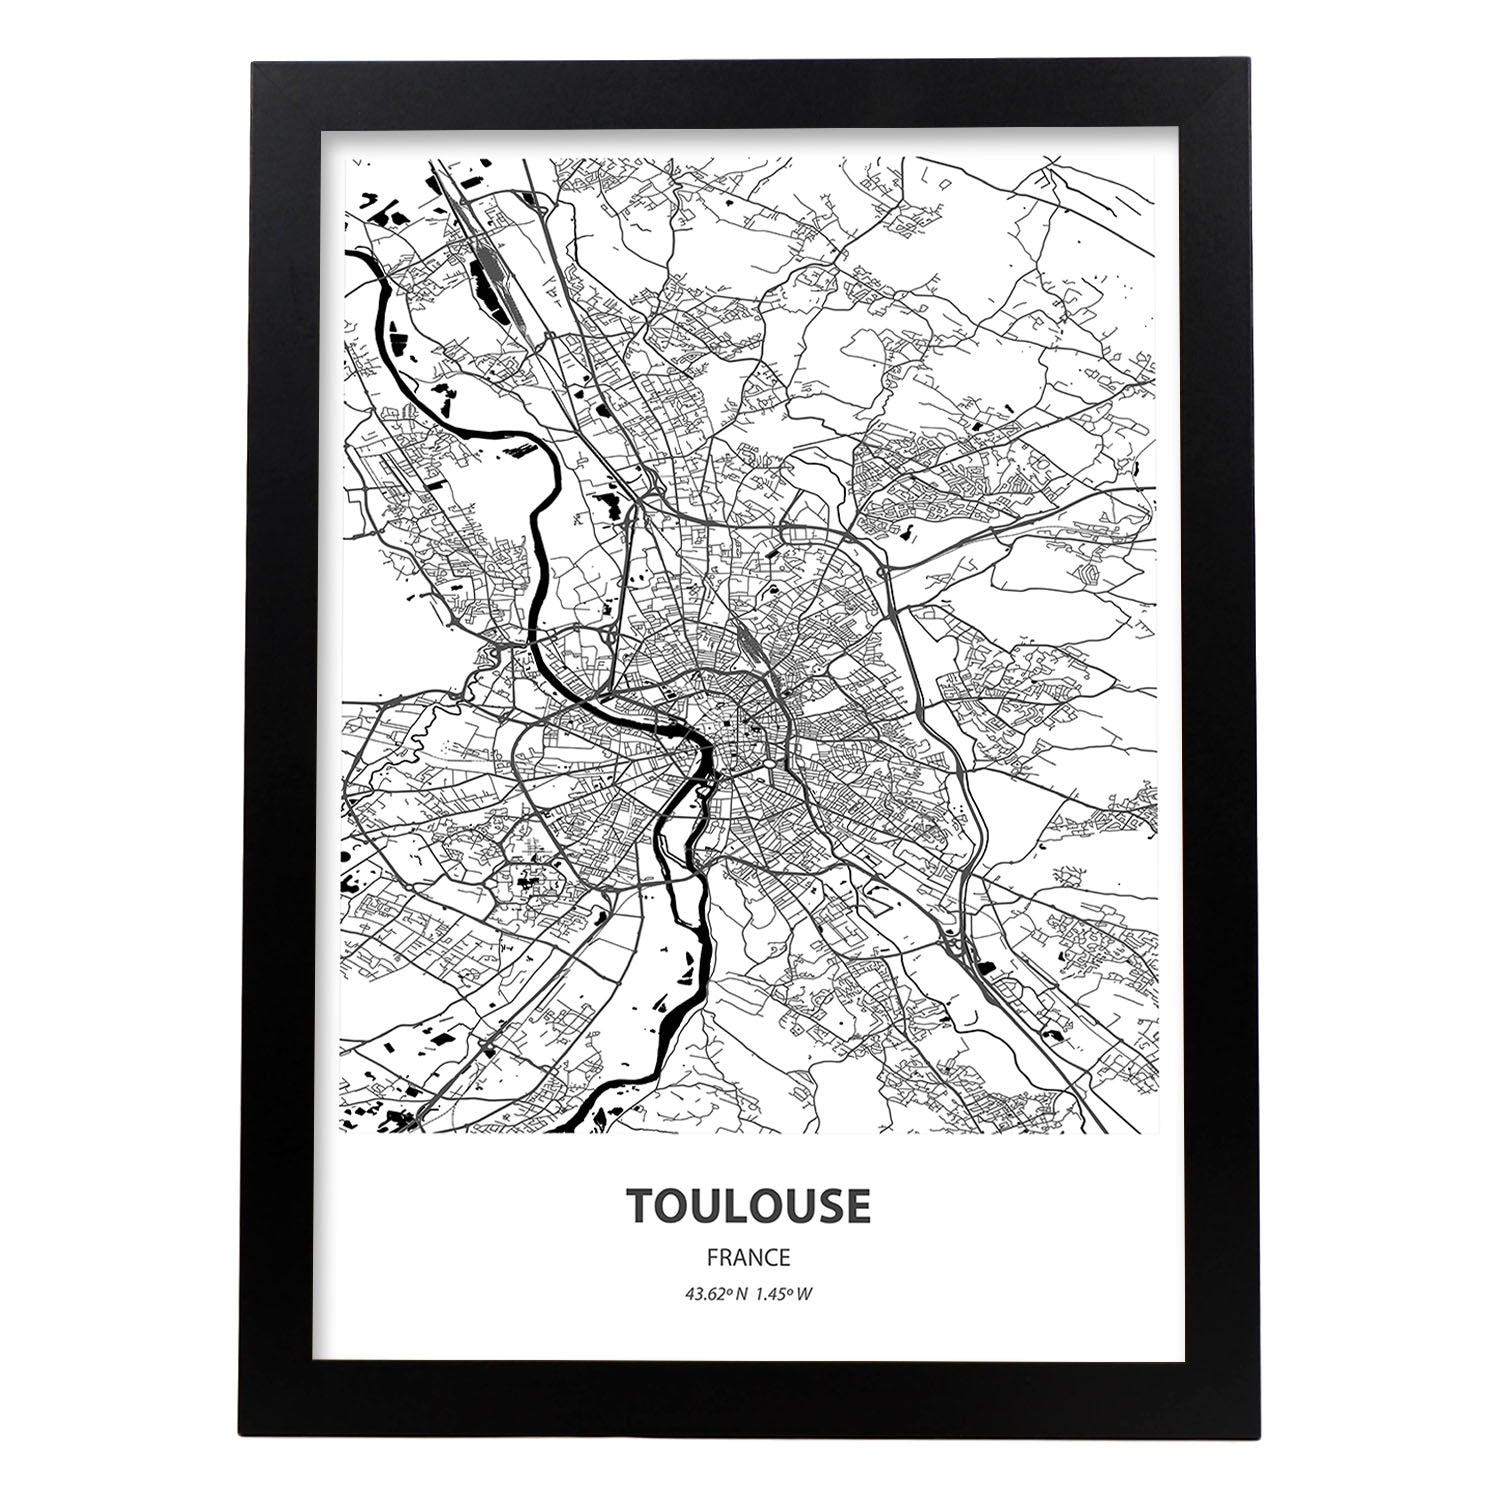 Poster con mapa de Toulouse - Francia. Láminas de ciudades de Francia con mares y ríos en color negro.-Artwork-Nacnic-A4-Marco Negro-Nacnic Estudio SL